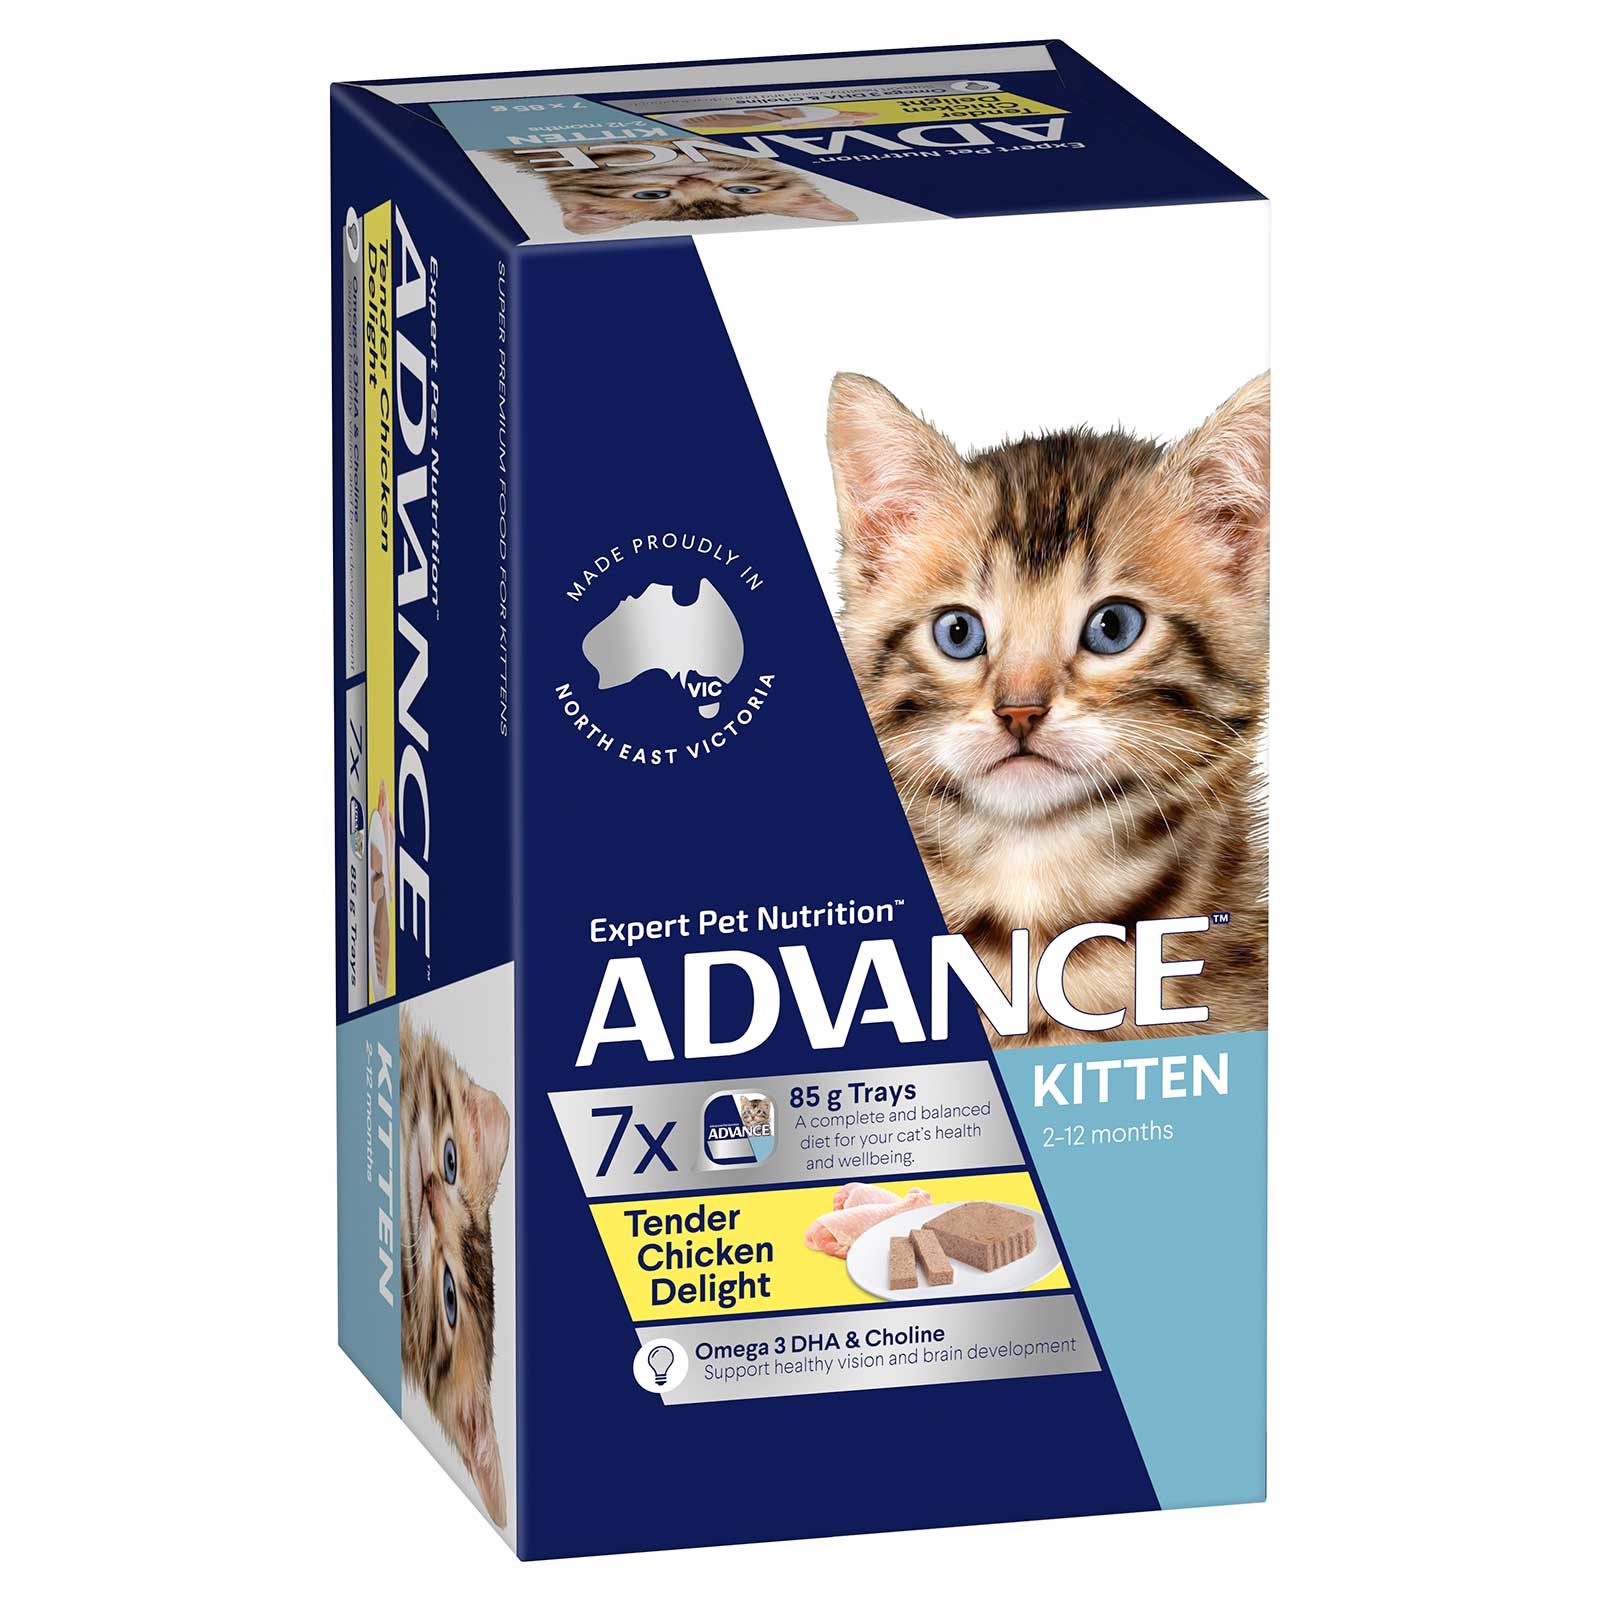 Advance Cat Food Tray Kitten Tender Chicken Delight